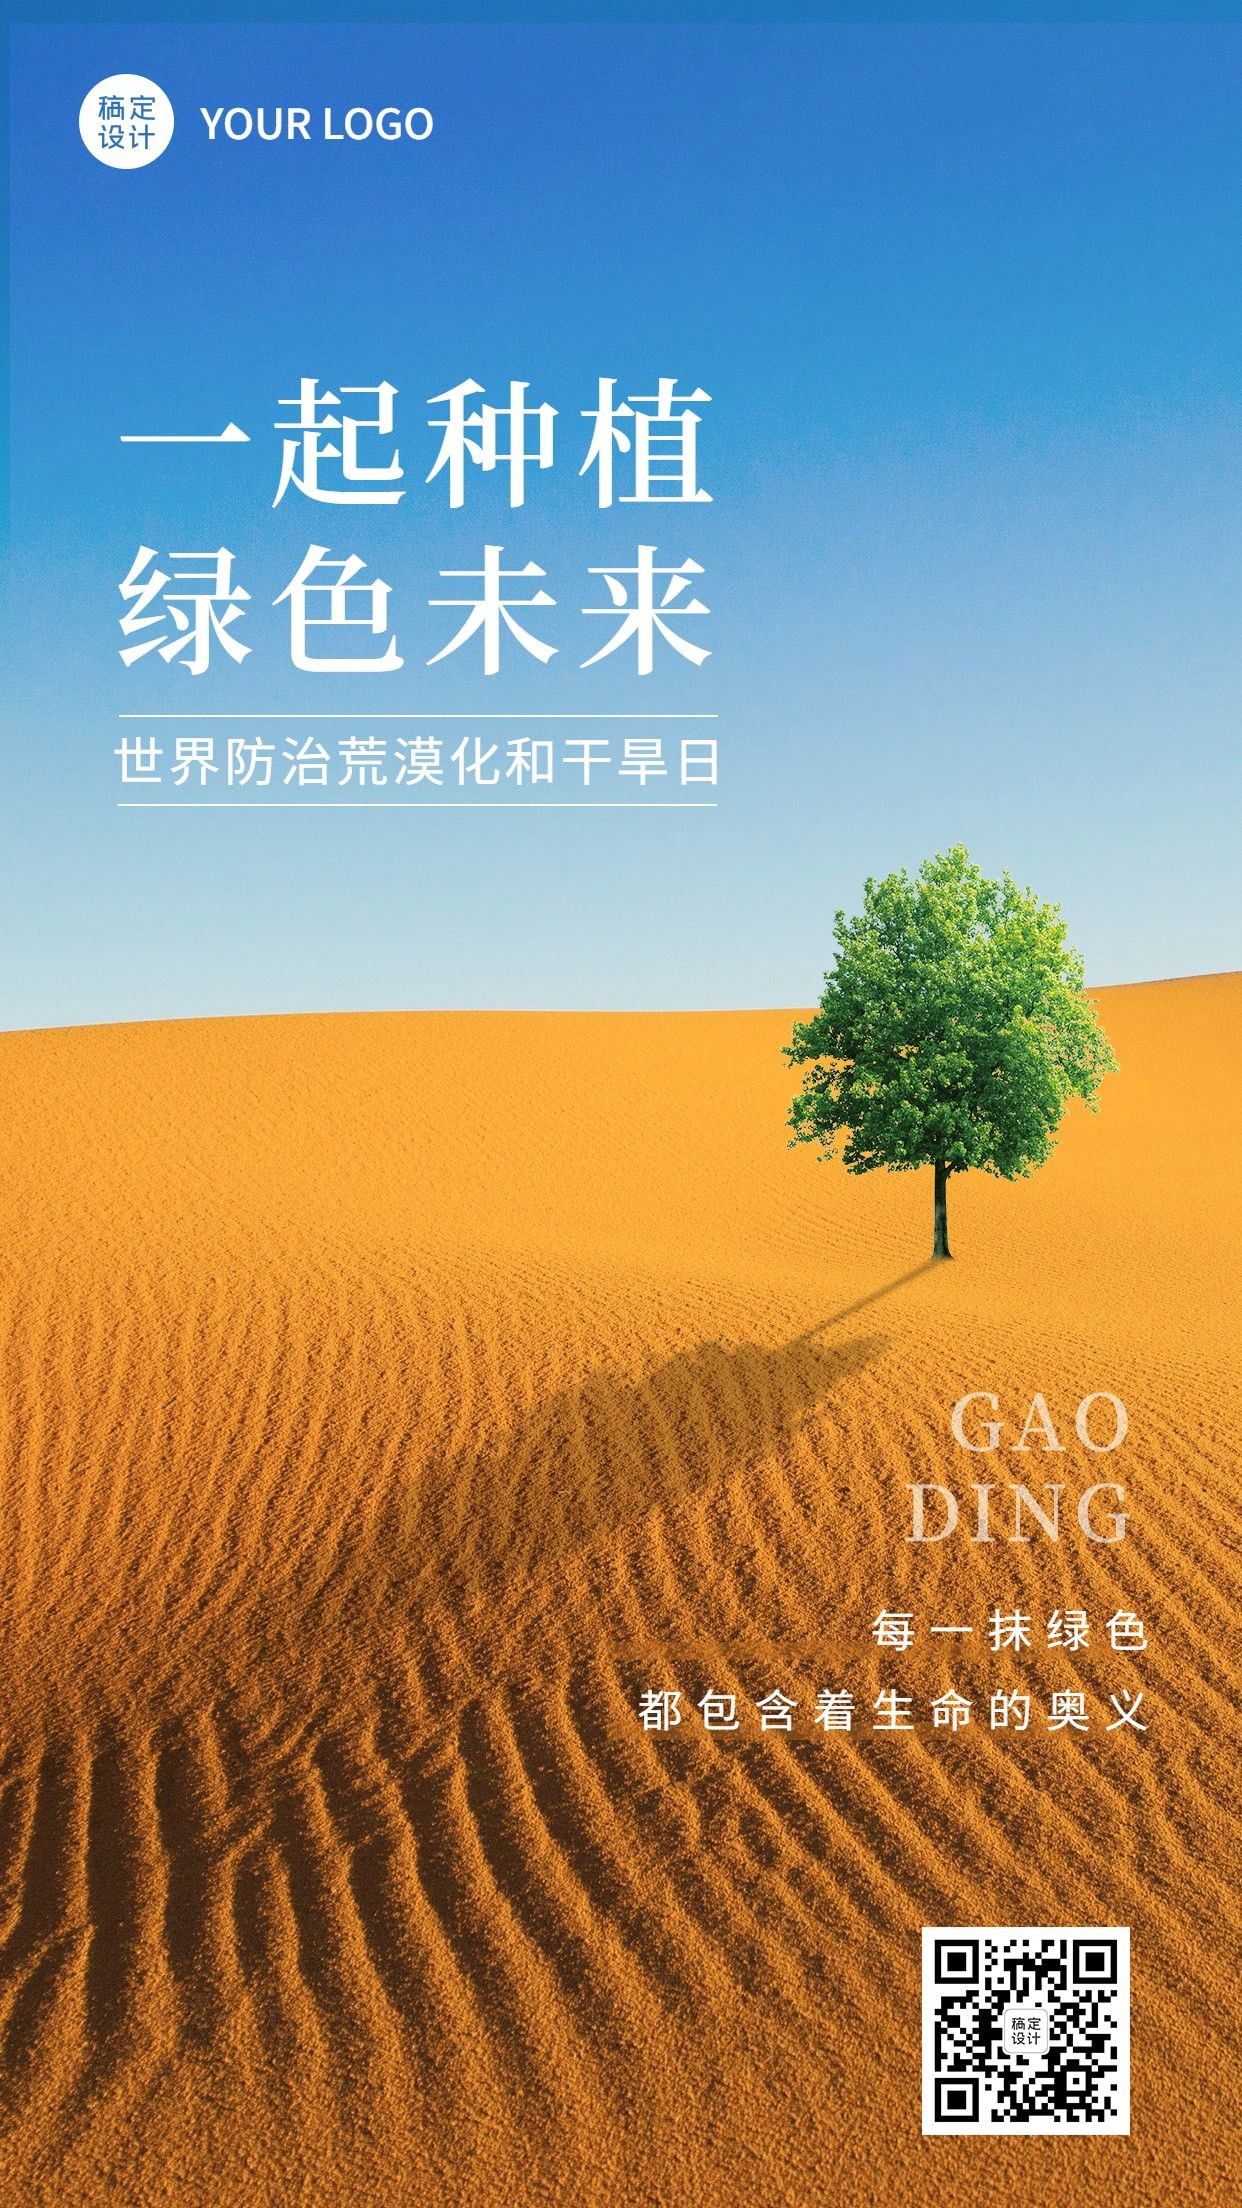 世界防治荒漠化和干旱日手机海报